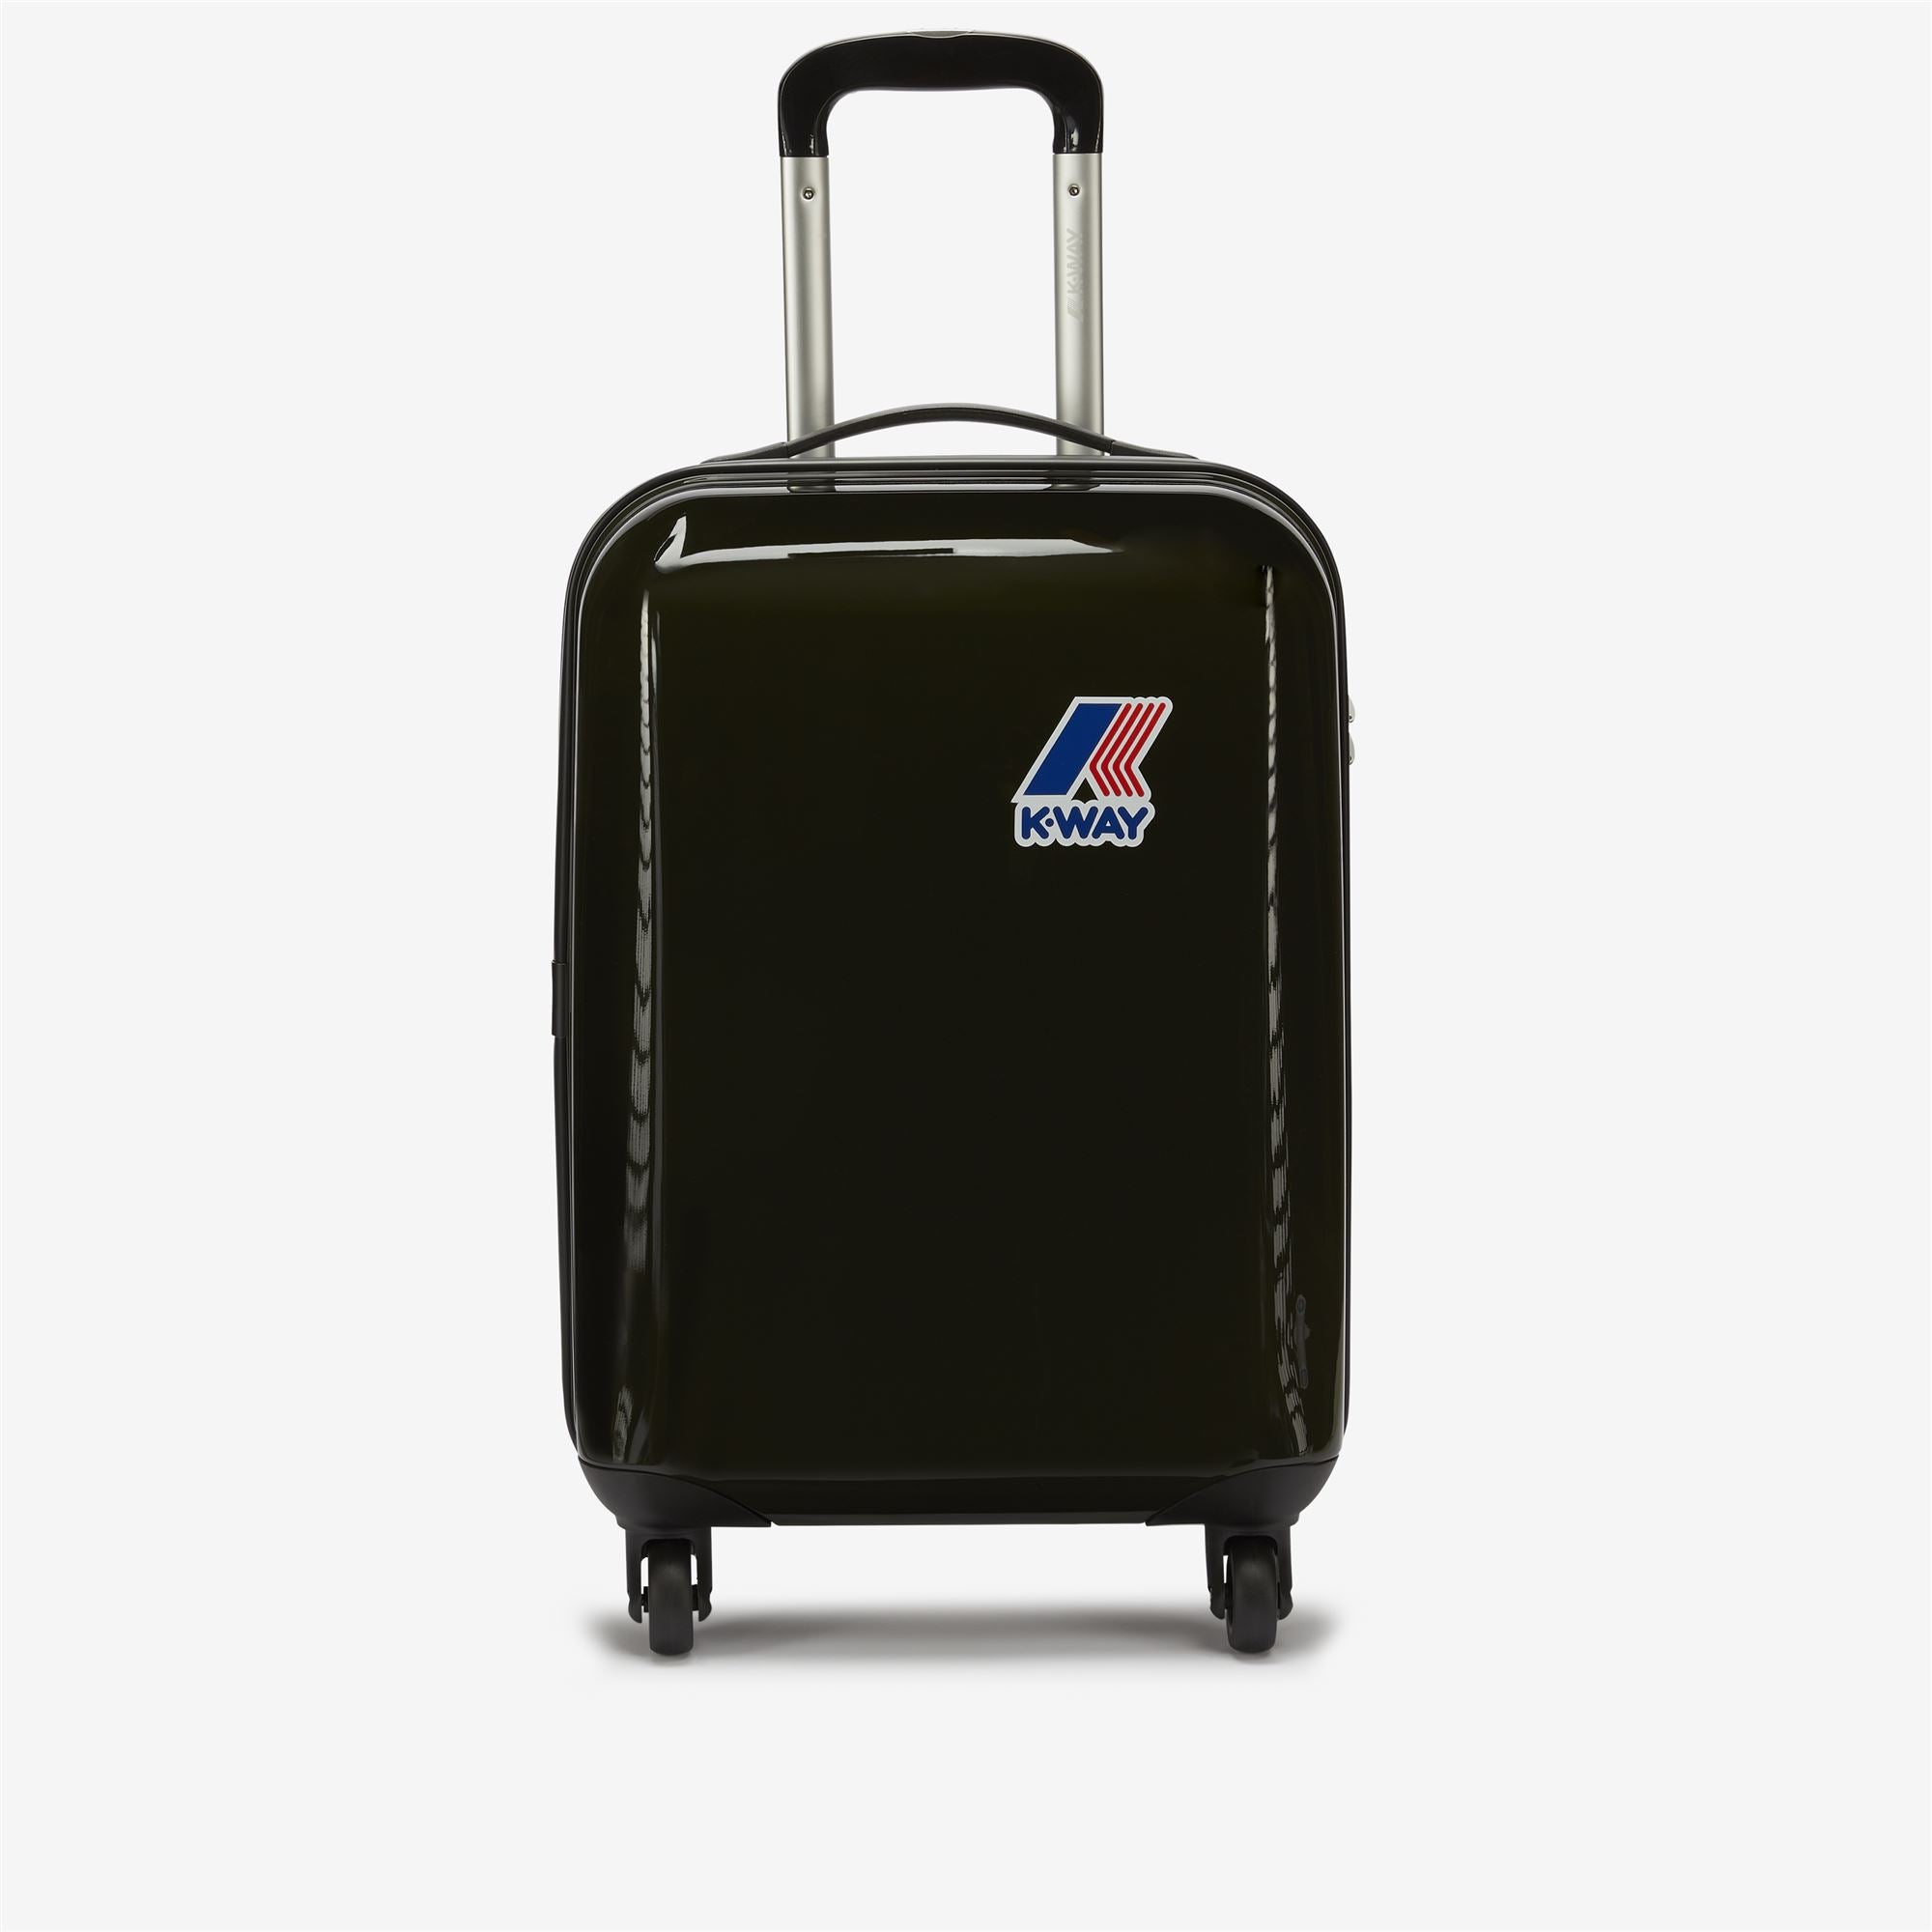 K-WAY SYSTEM MINI TROLLEY - Luggage Bags - Trolley - Unisex - BLACK TORBA